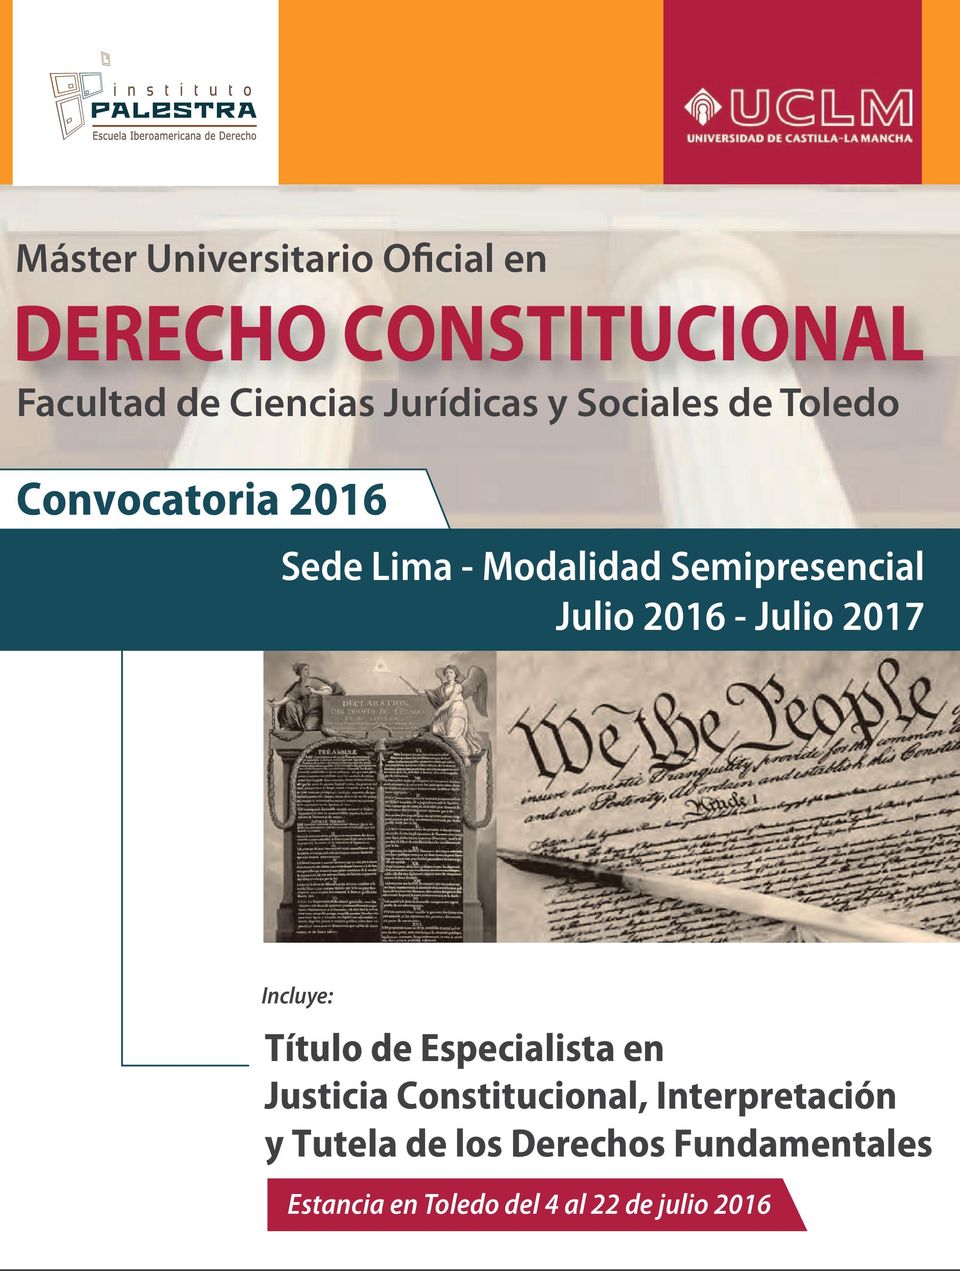 2016 - Julio 2017 Incluye: Título de Especialista en Justicia Constitucional,